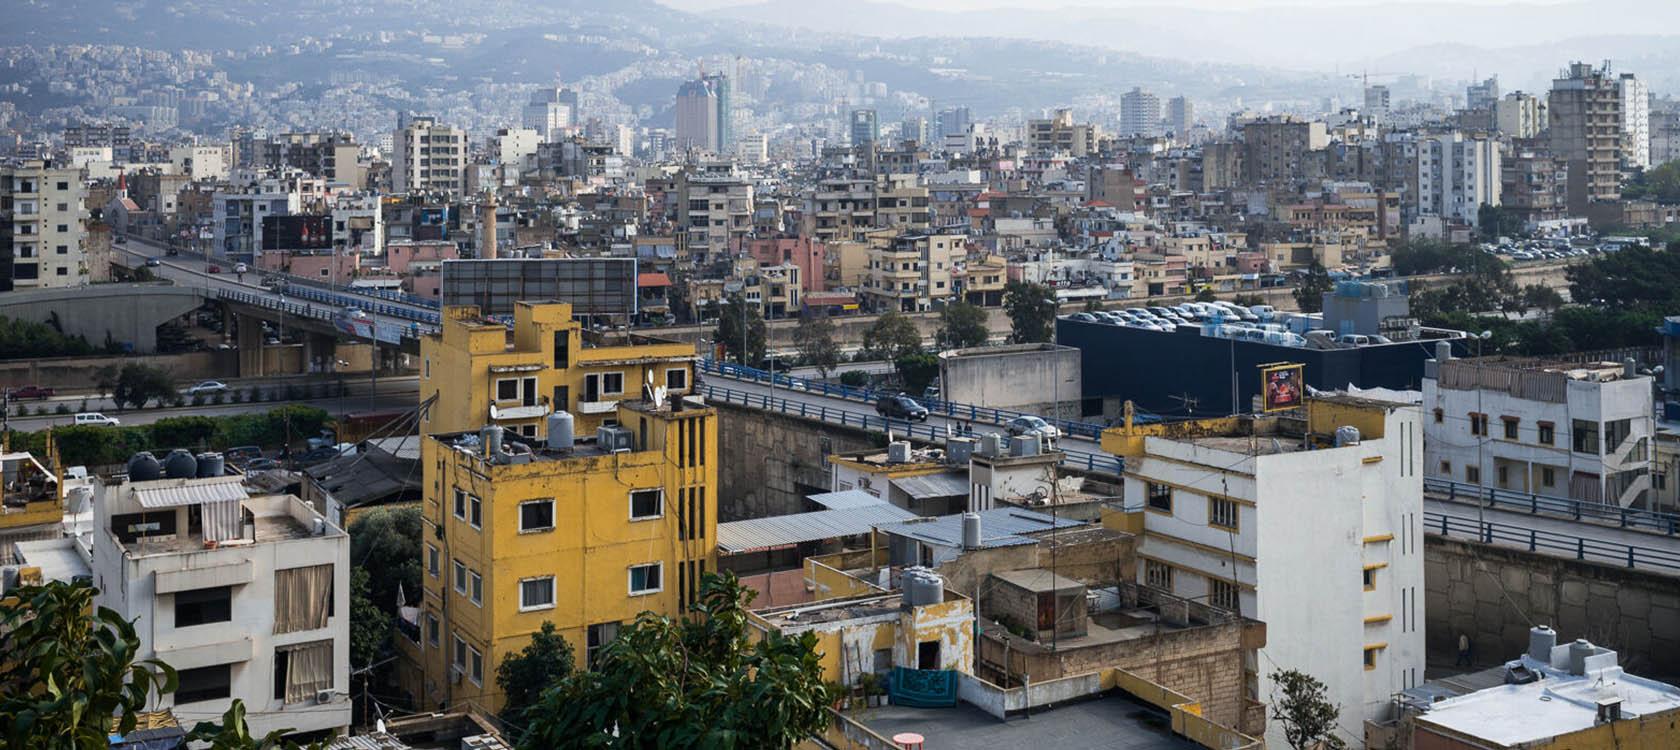 Le Liban pourrait sombrer comme le "Titanic", selon un homme politique de premier plan